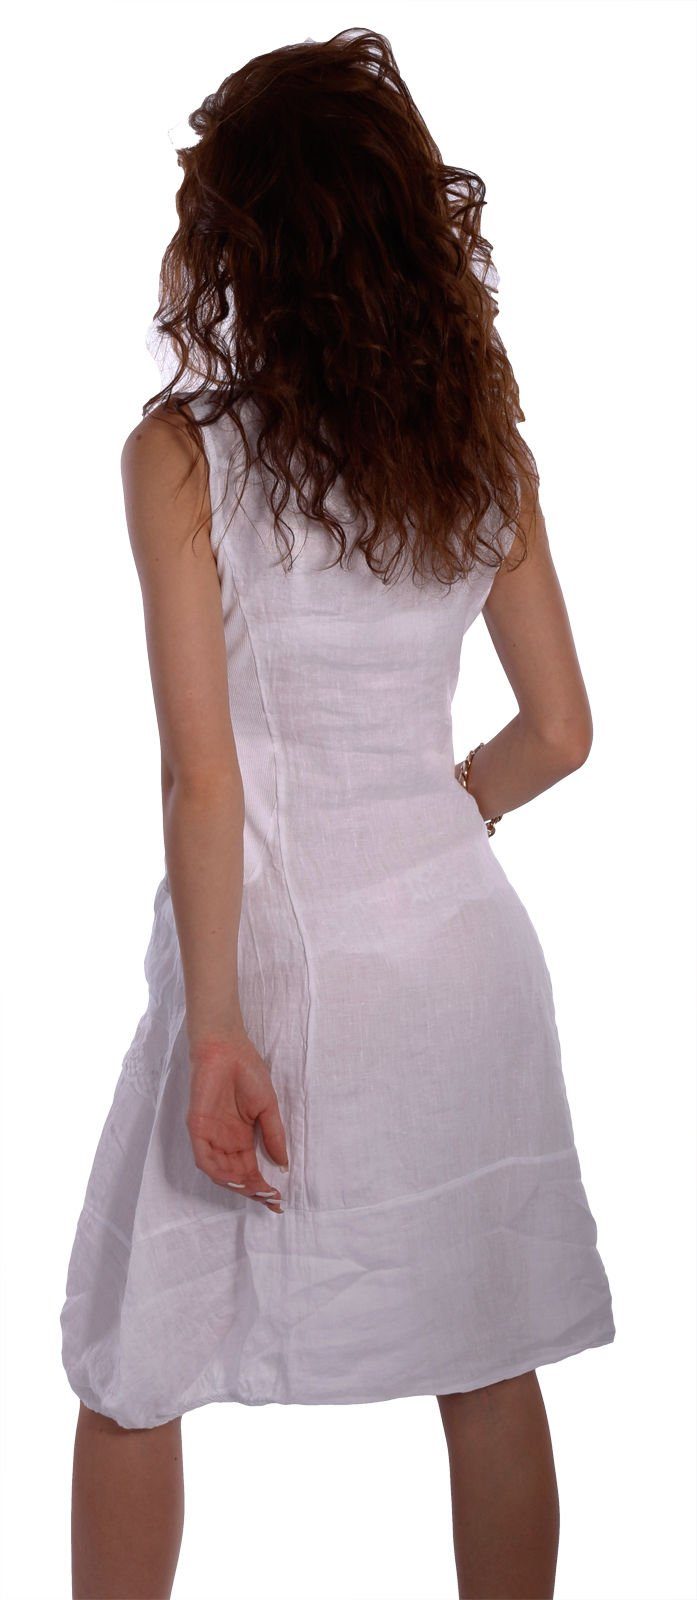 ärmellos Kleid schönen Sommerkleid mit Details Moda Charis Weiß Leinen